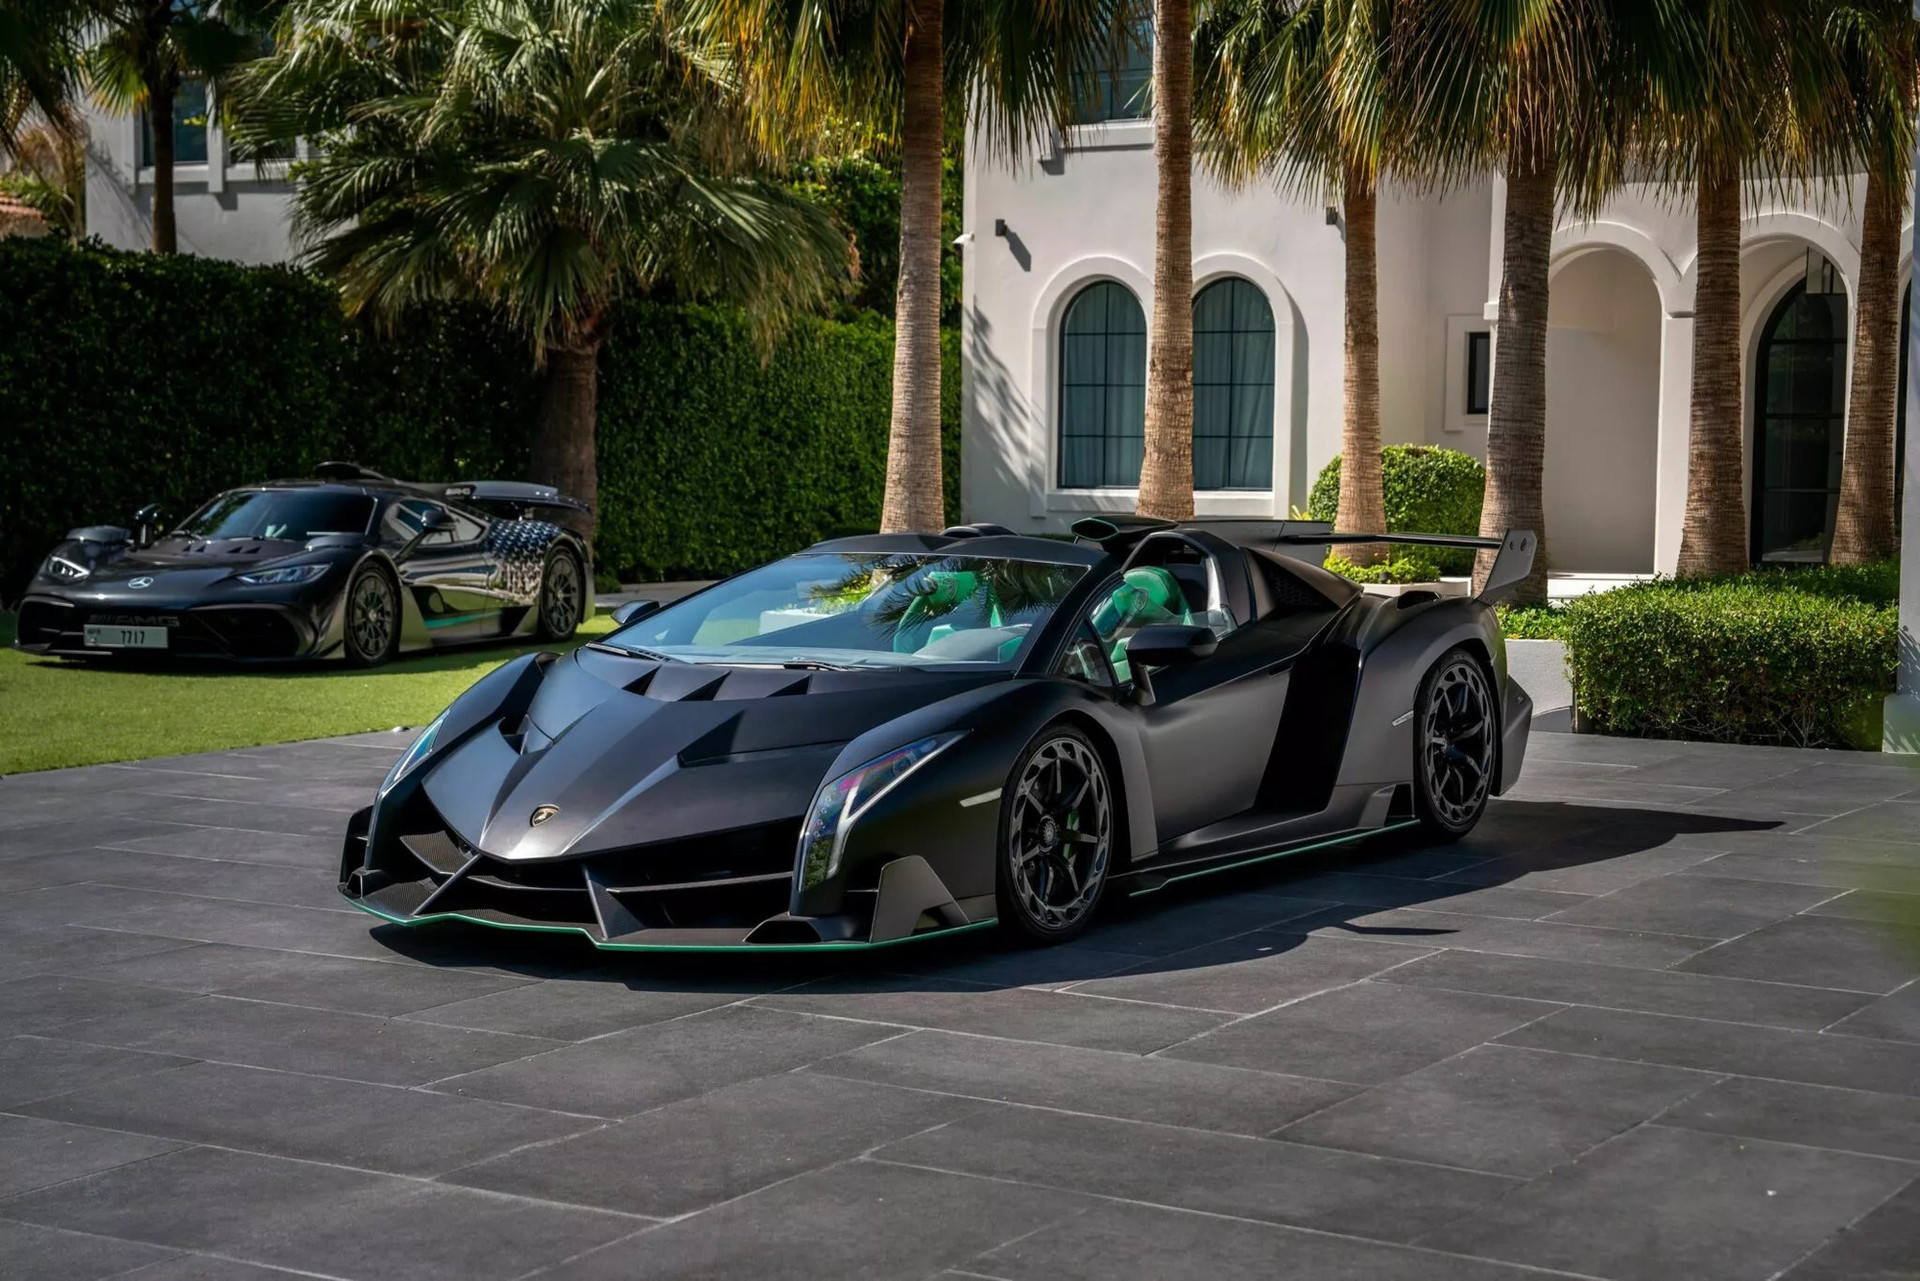 Chiếc Lamborghini Veneno bản mui trần được rao bán sở hữu ngoại thất đan xen giữa tông đen nhám của sợi carbon trần và xanh lá từ các chi tiết trang trí - Ảnh: SBX Cars